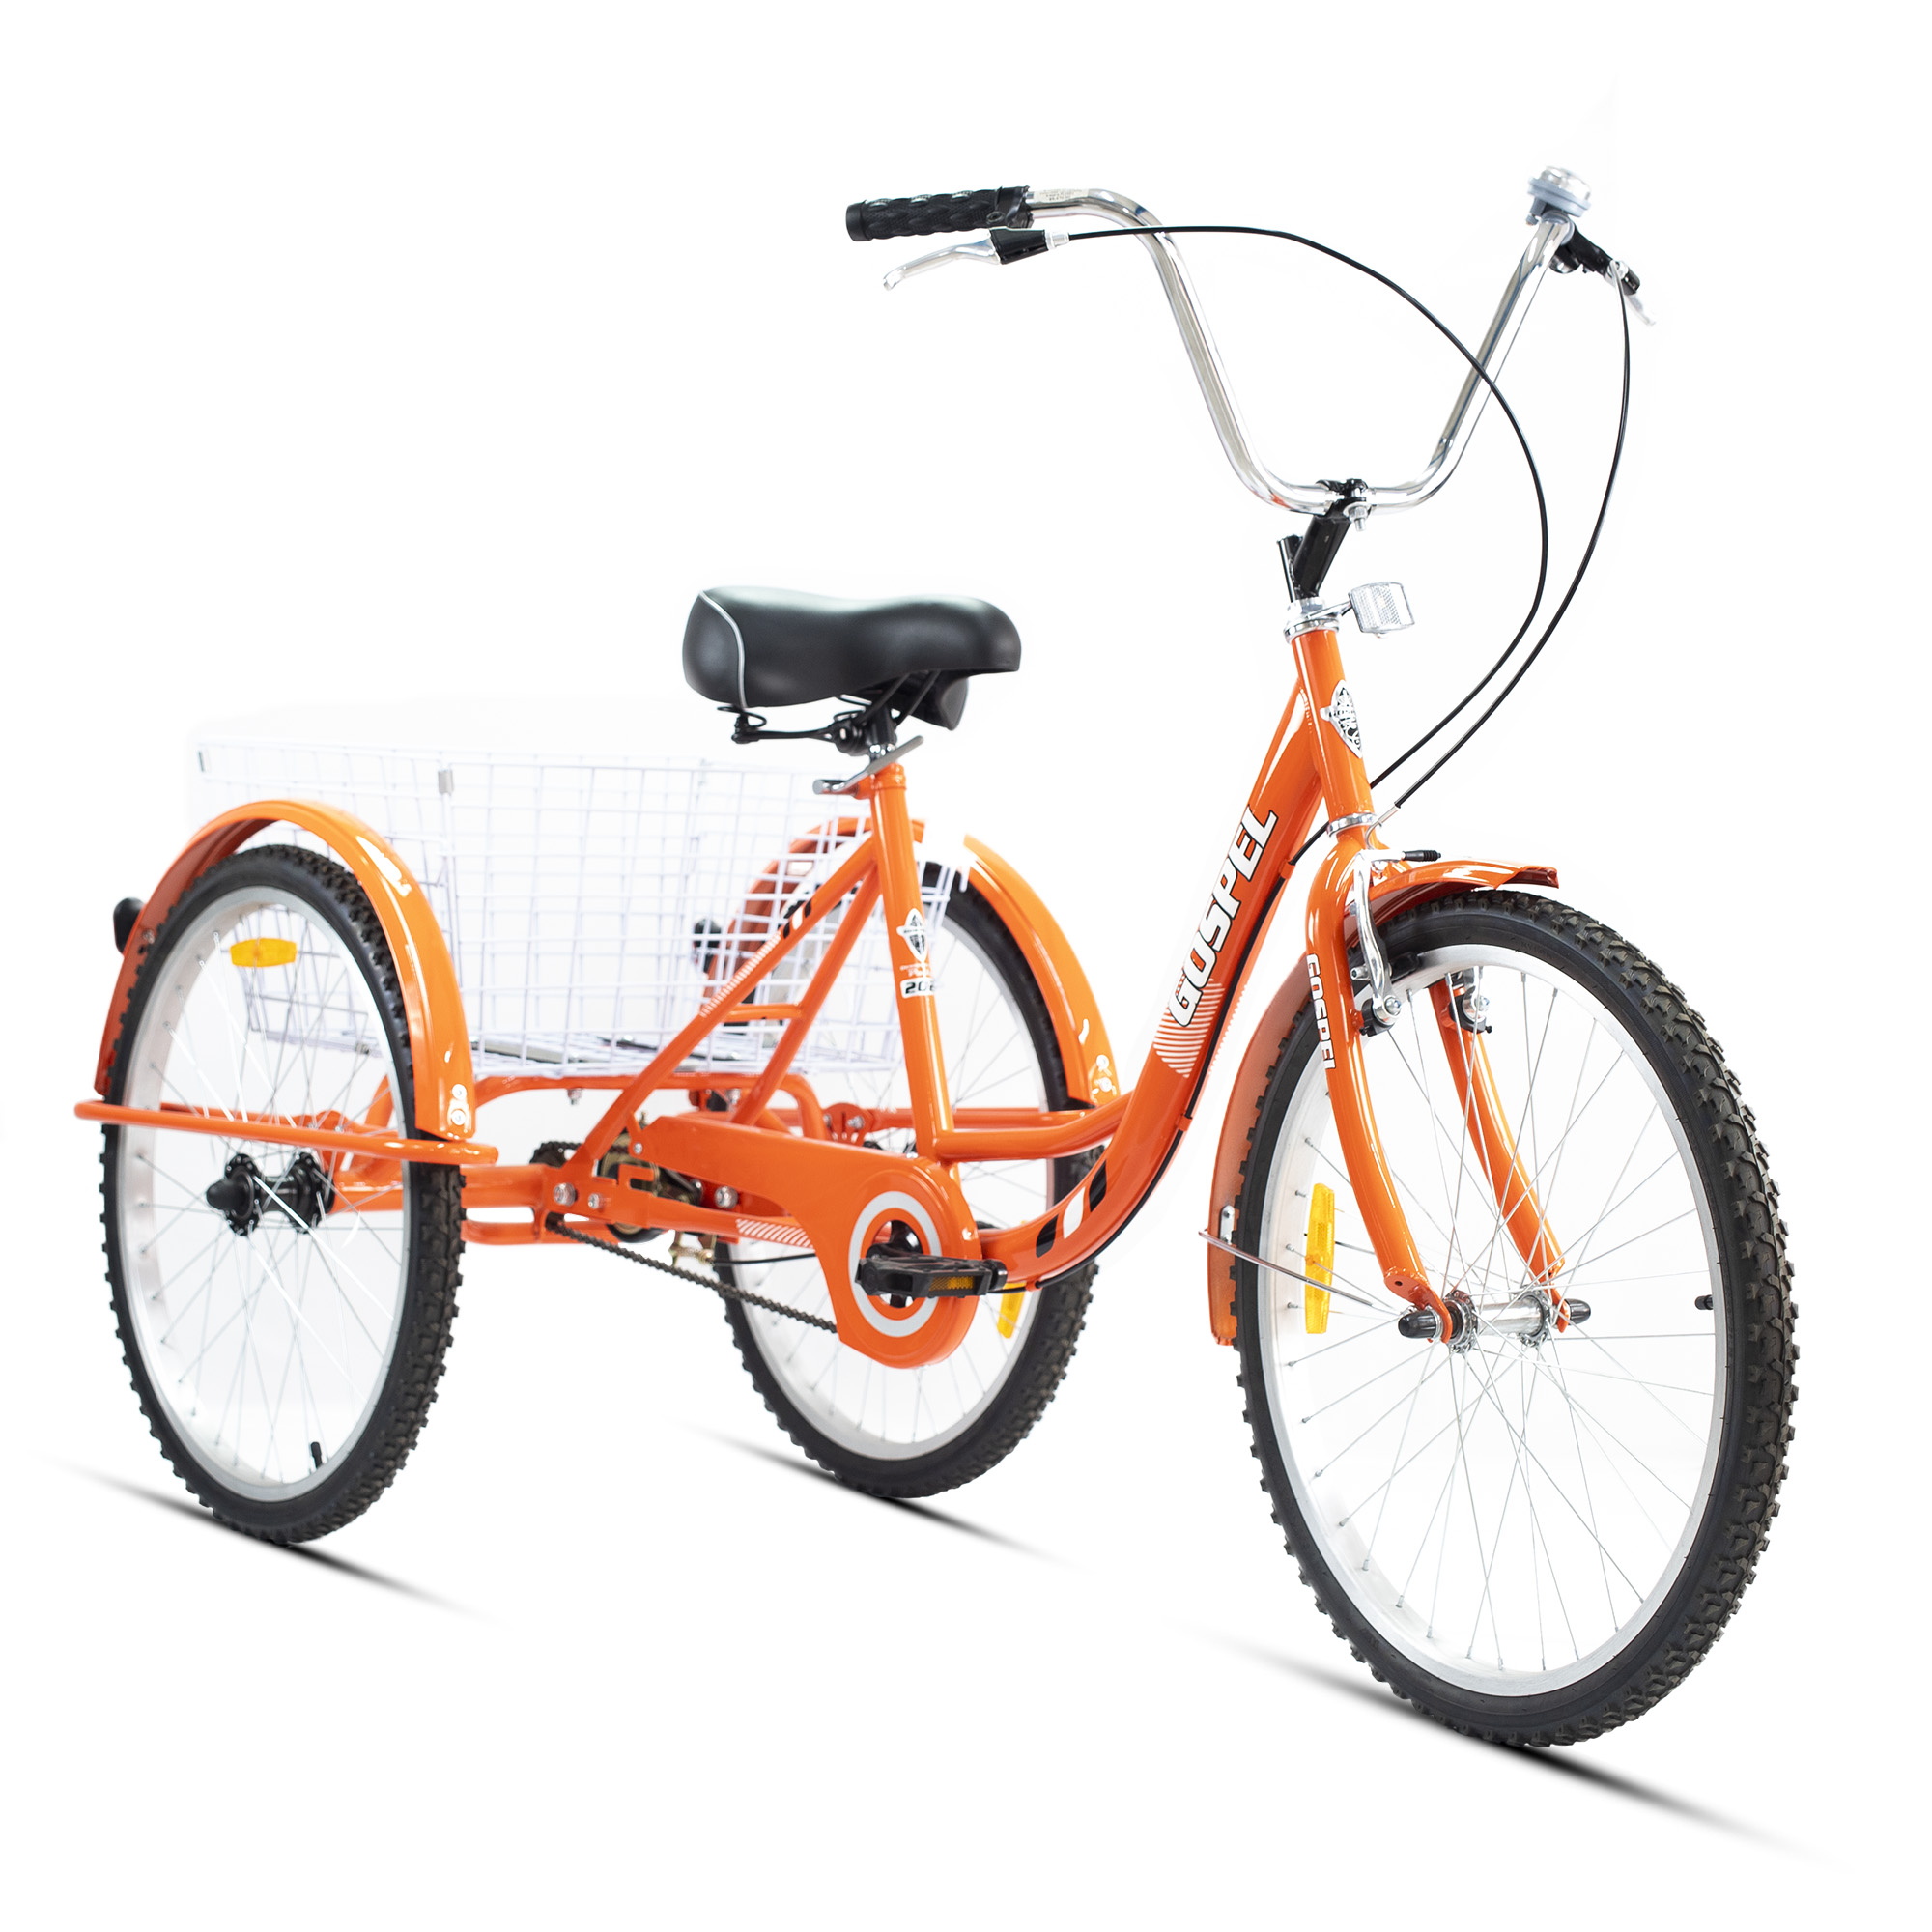 Detalles Tricicleta R 24 Urbana con canasta trasera 1 Velocidad naranja Gospel